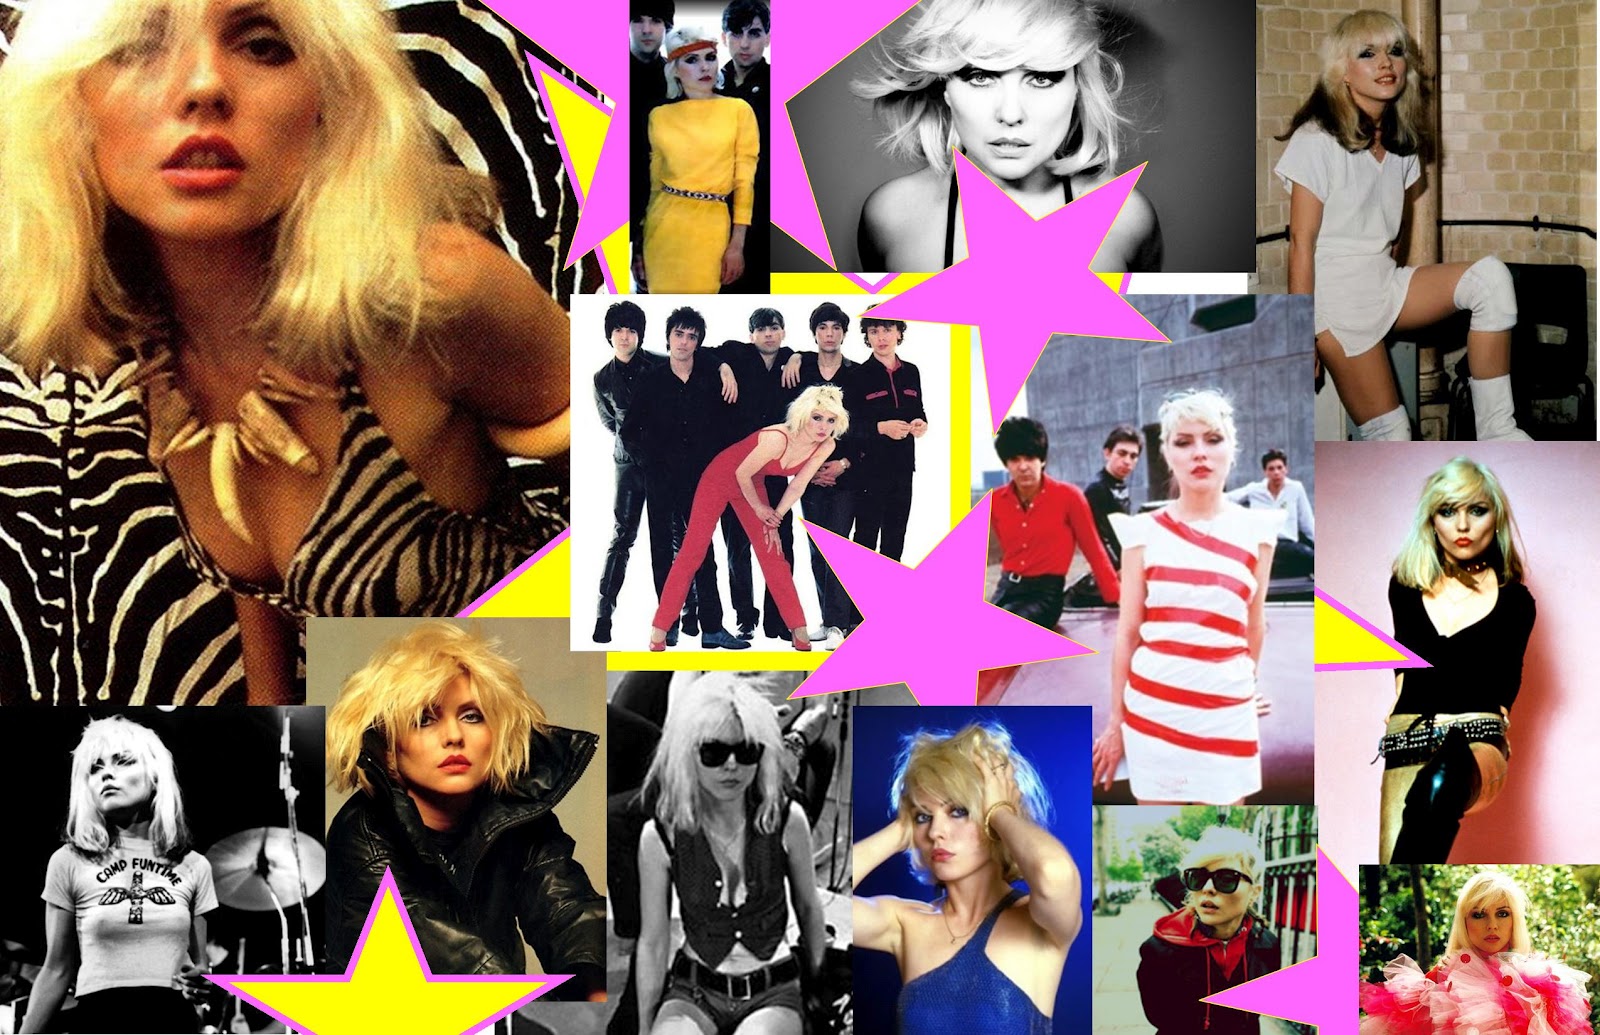 http://2.bp.blogspot.com/-5yJ0c8wuJqk/T6yYju42gPI/AAAAAAAAAUw/jlQOomDS0CY/s1600/Blondie+Collage.jpg